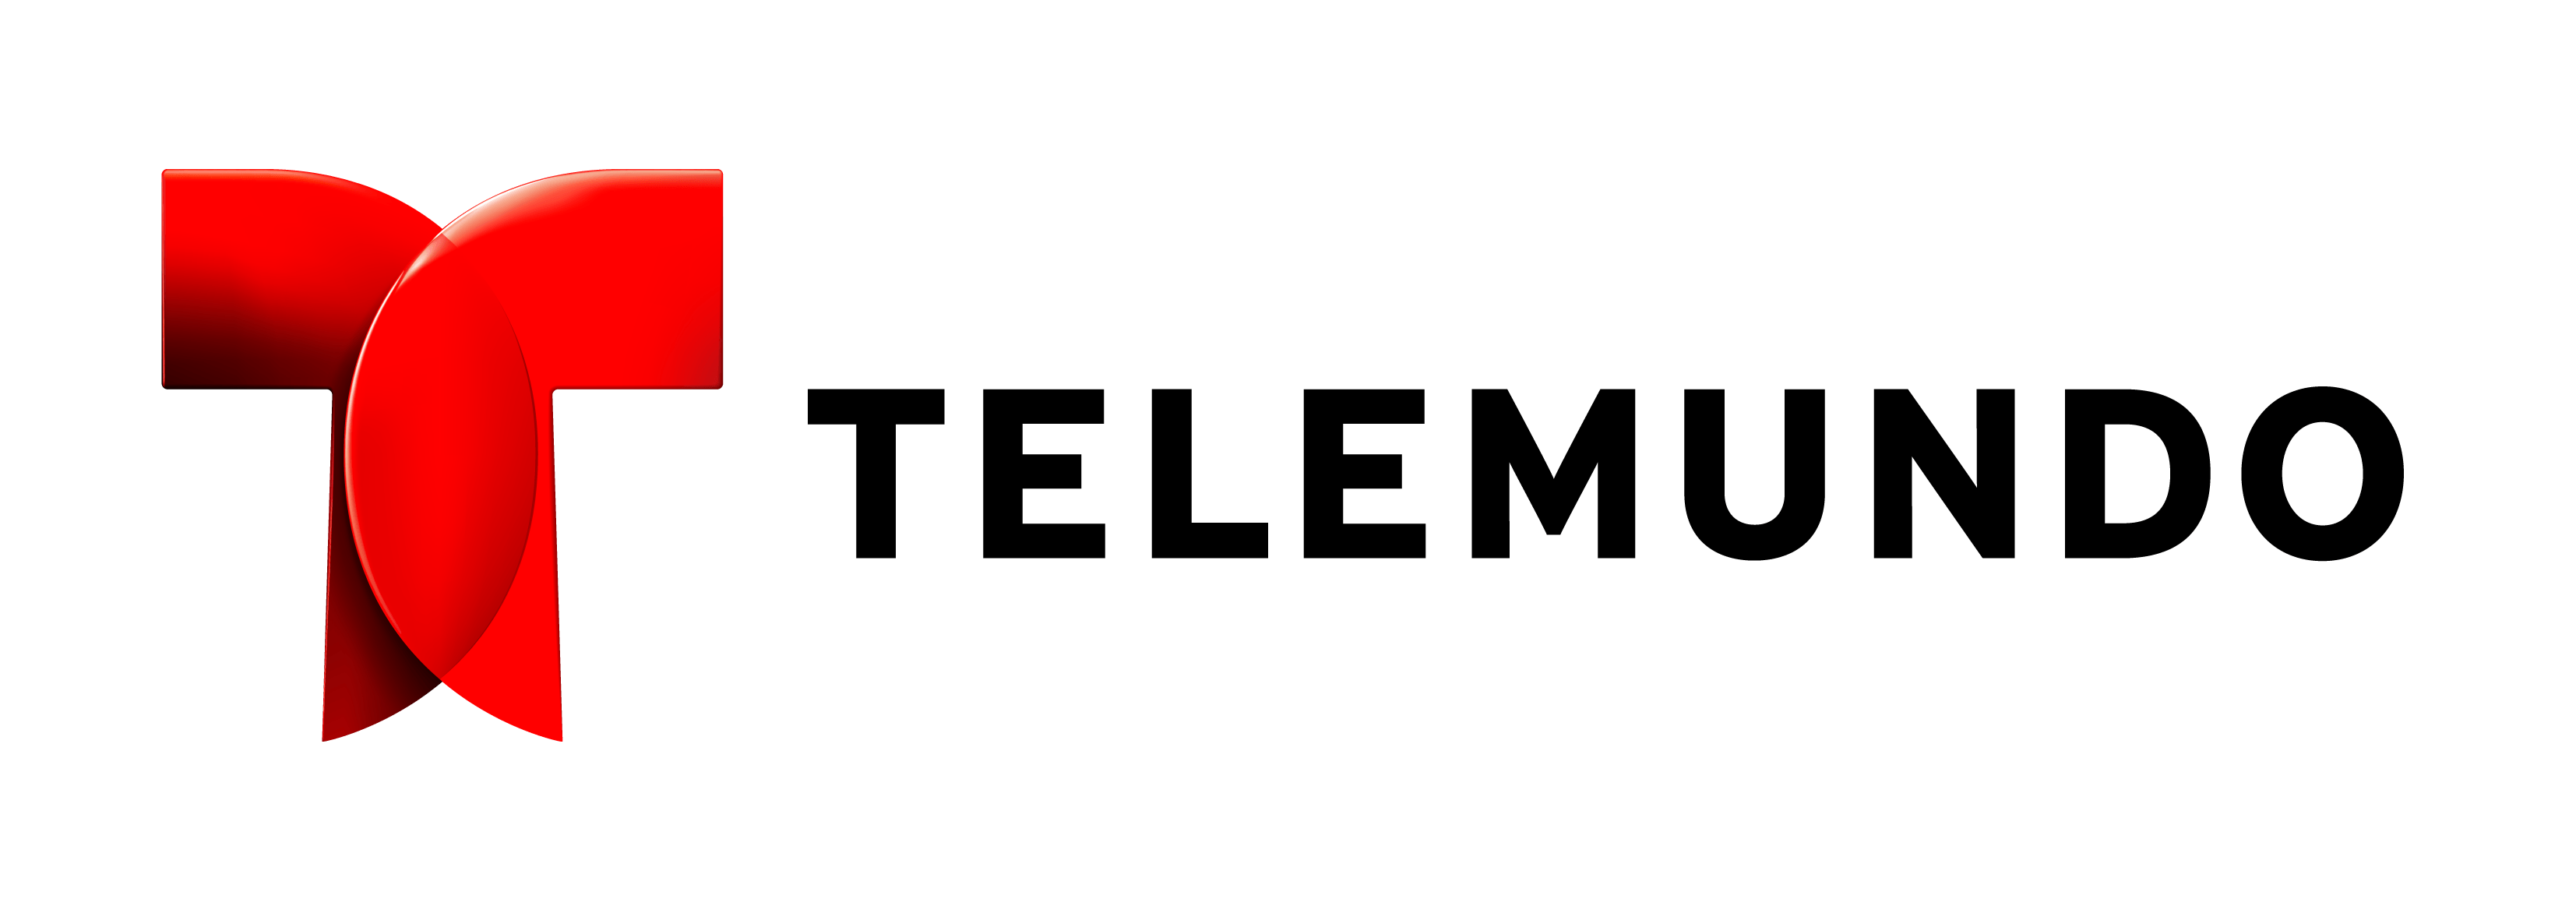 Telemundo Logo - telemundo logo